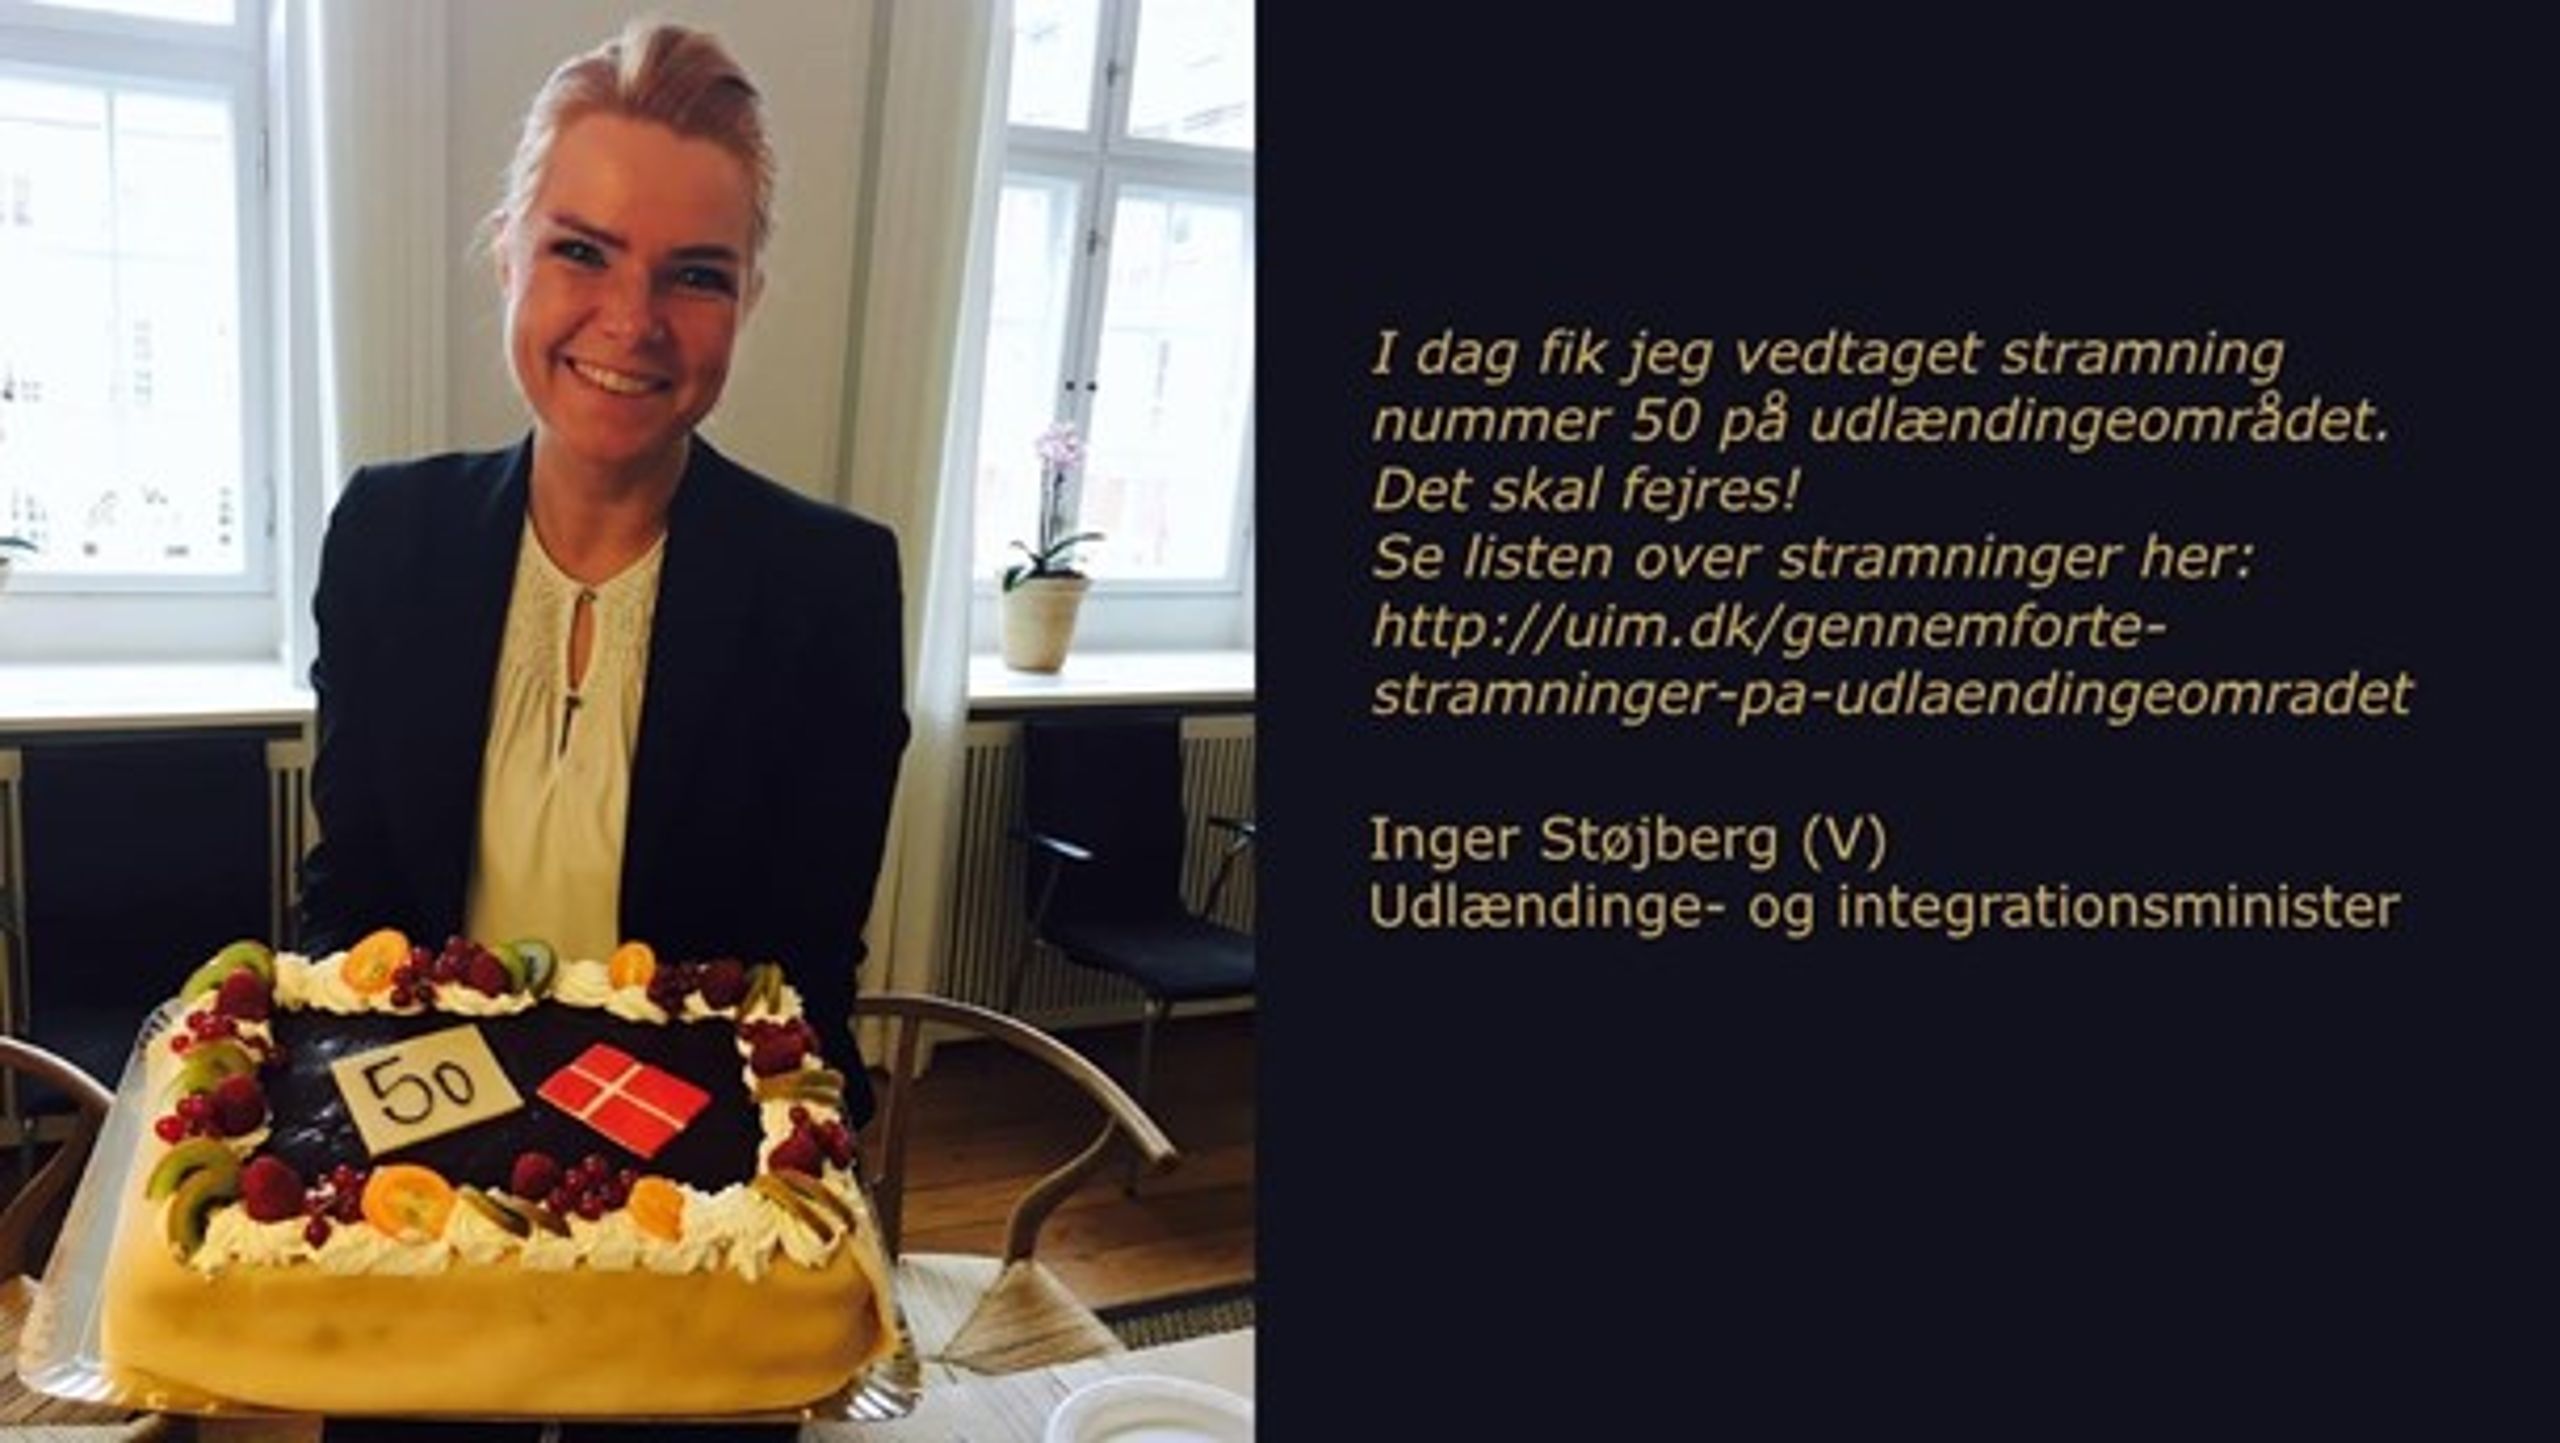 Inger Støjberg fejrer udlændingestramning nr. 50 med lagkage på sin Facebook-profil.